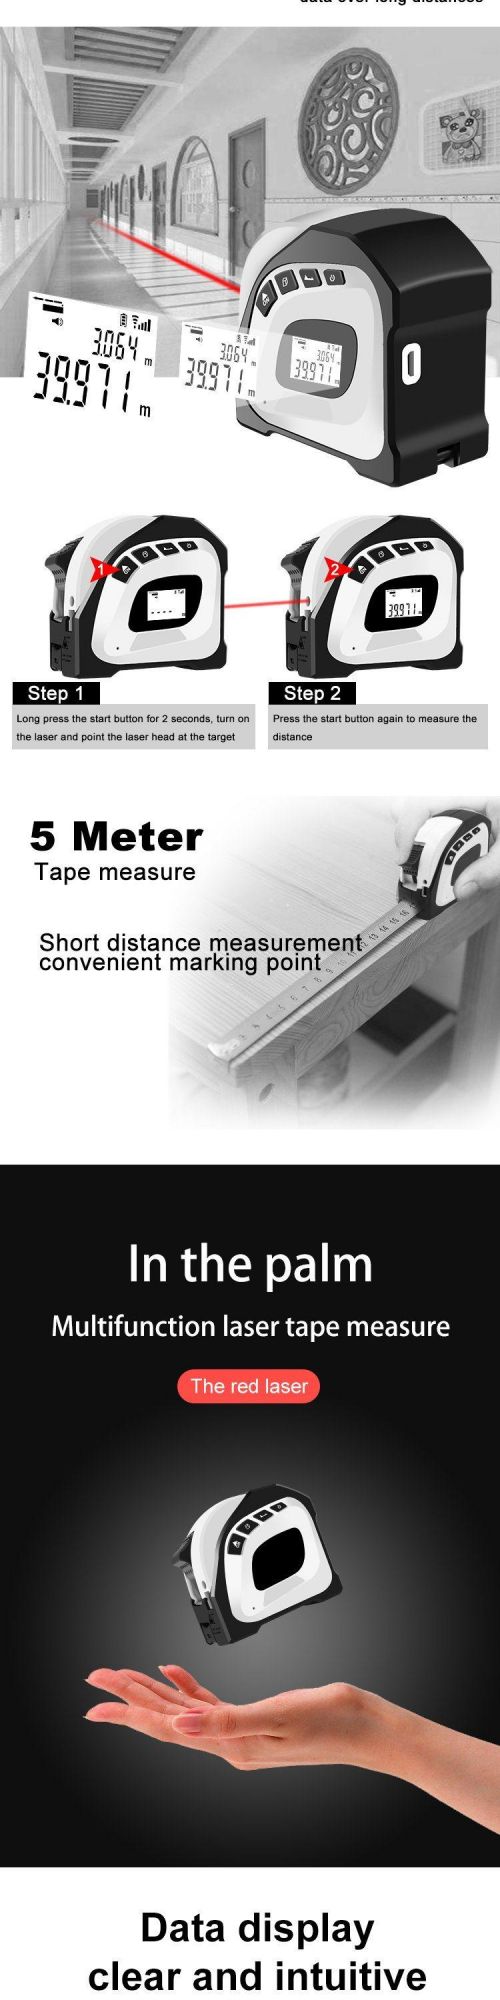 2 in 1 Digital Laser Tape Measure Distance Meter